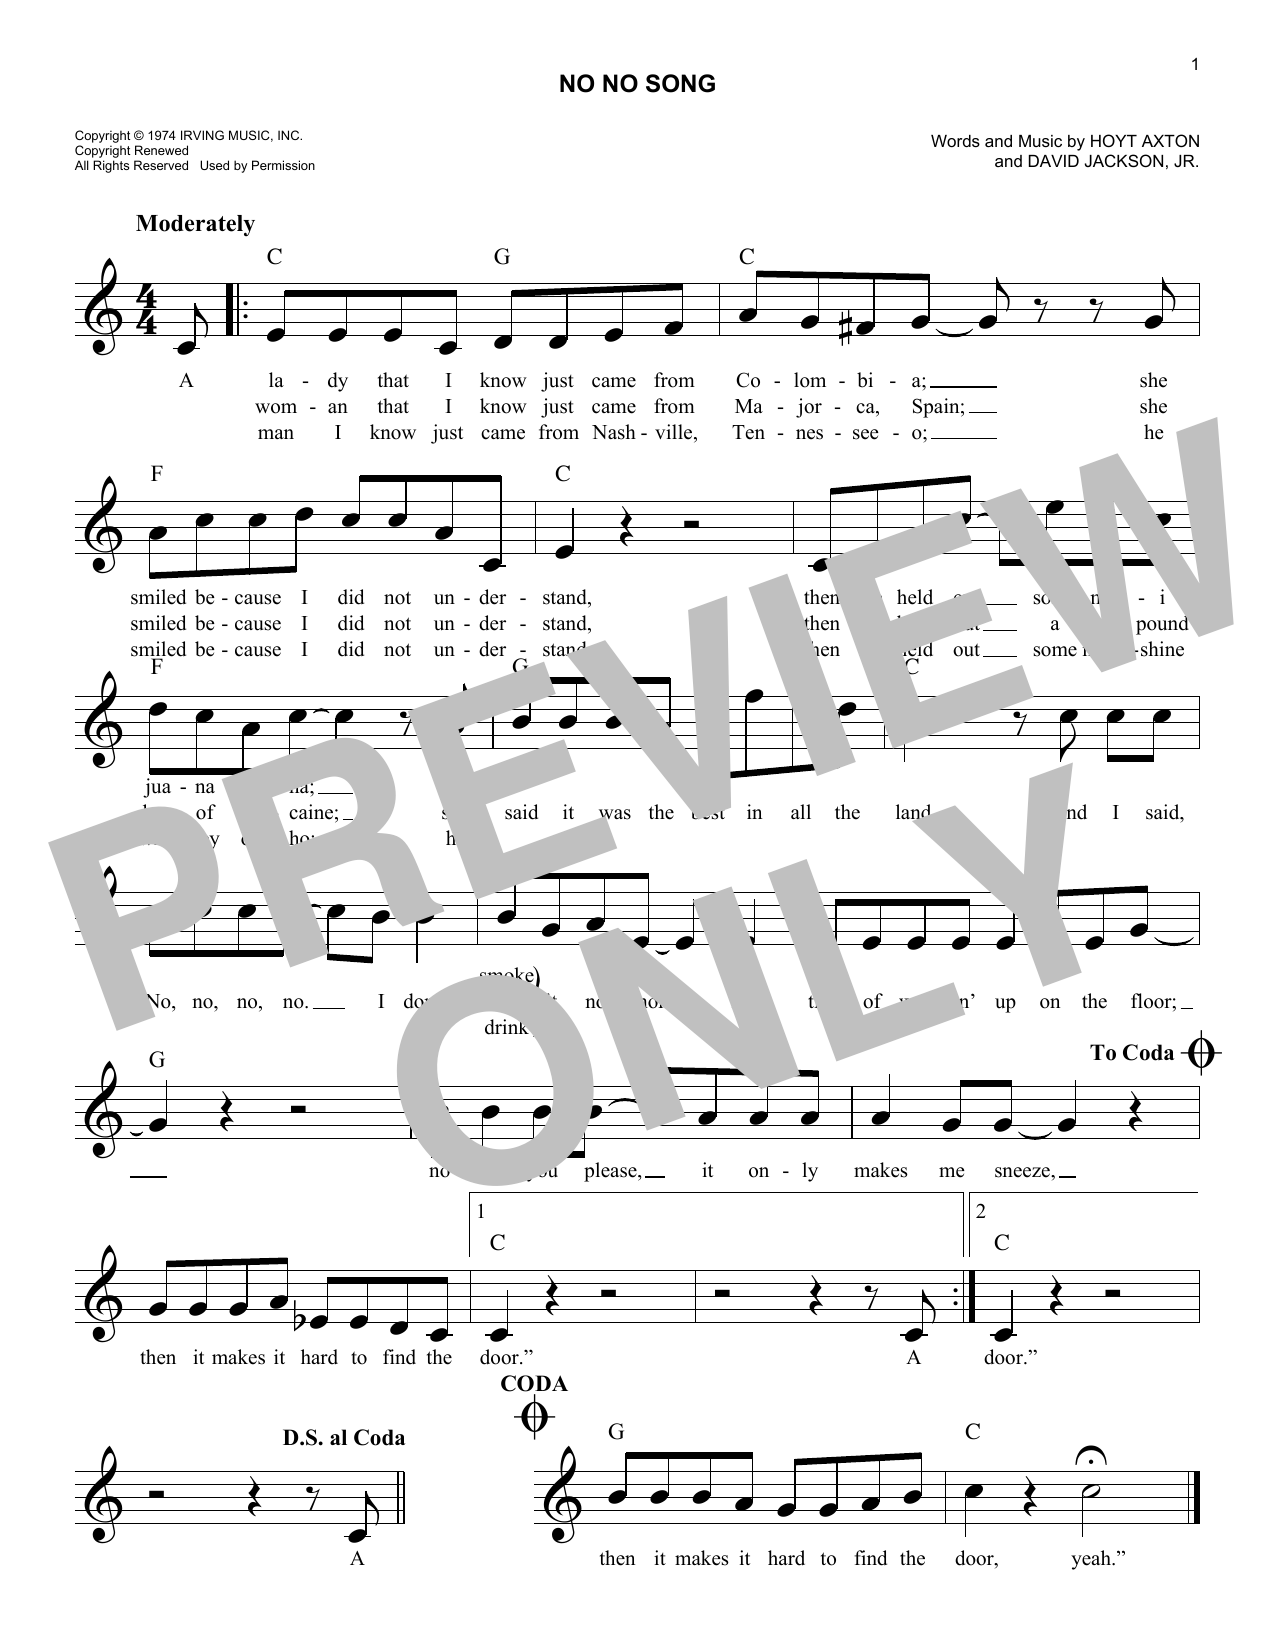 David Jackson, Jr. No No Song Sheet Music Notes & Chords for Melody Line, Lyrics & Chords - Download or Print PDF